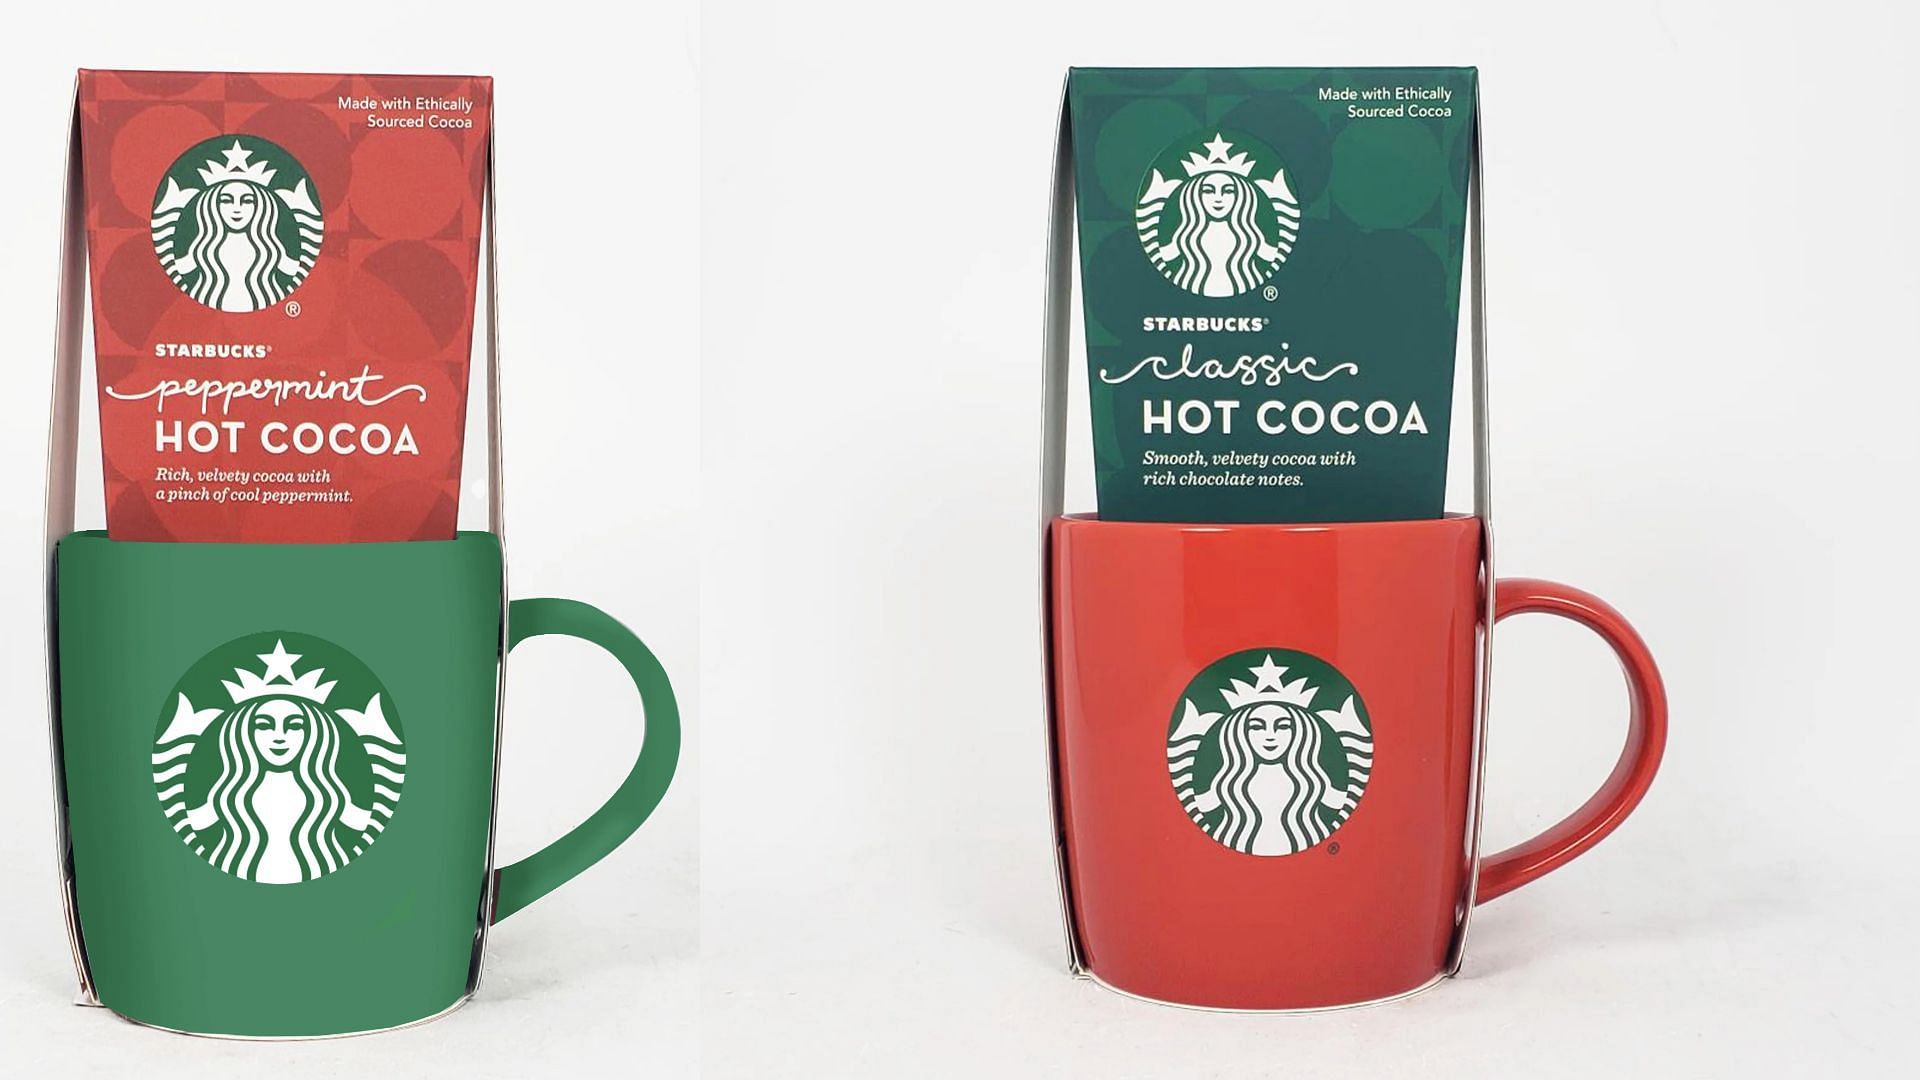 Starbucks Holiday Mug with Cocoa Set, 2 Piece Gift Set (Image via Walmart)